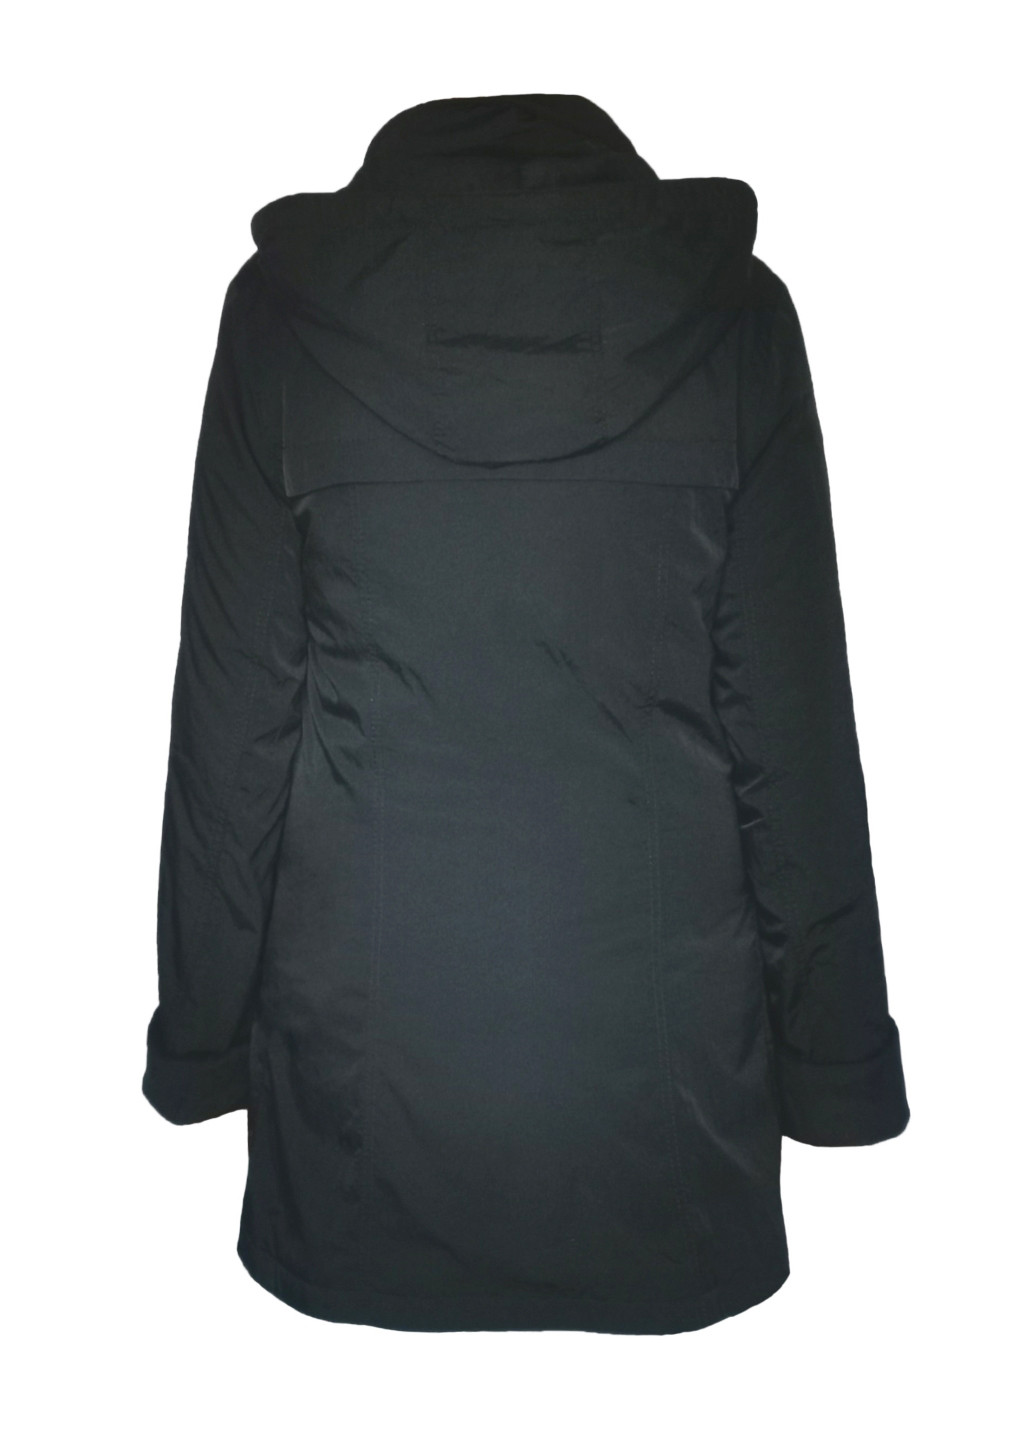 Черная демисезонная куртка демисезонная женская с капюшоном City Classic